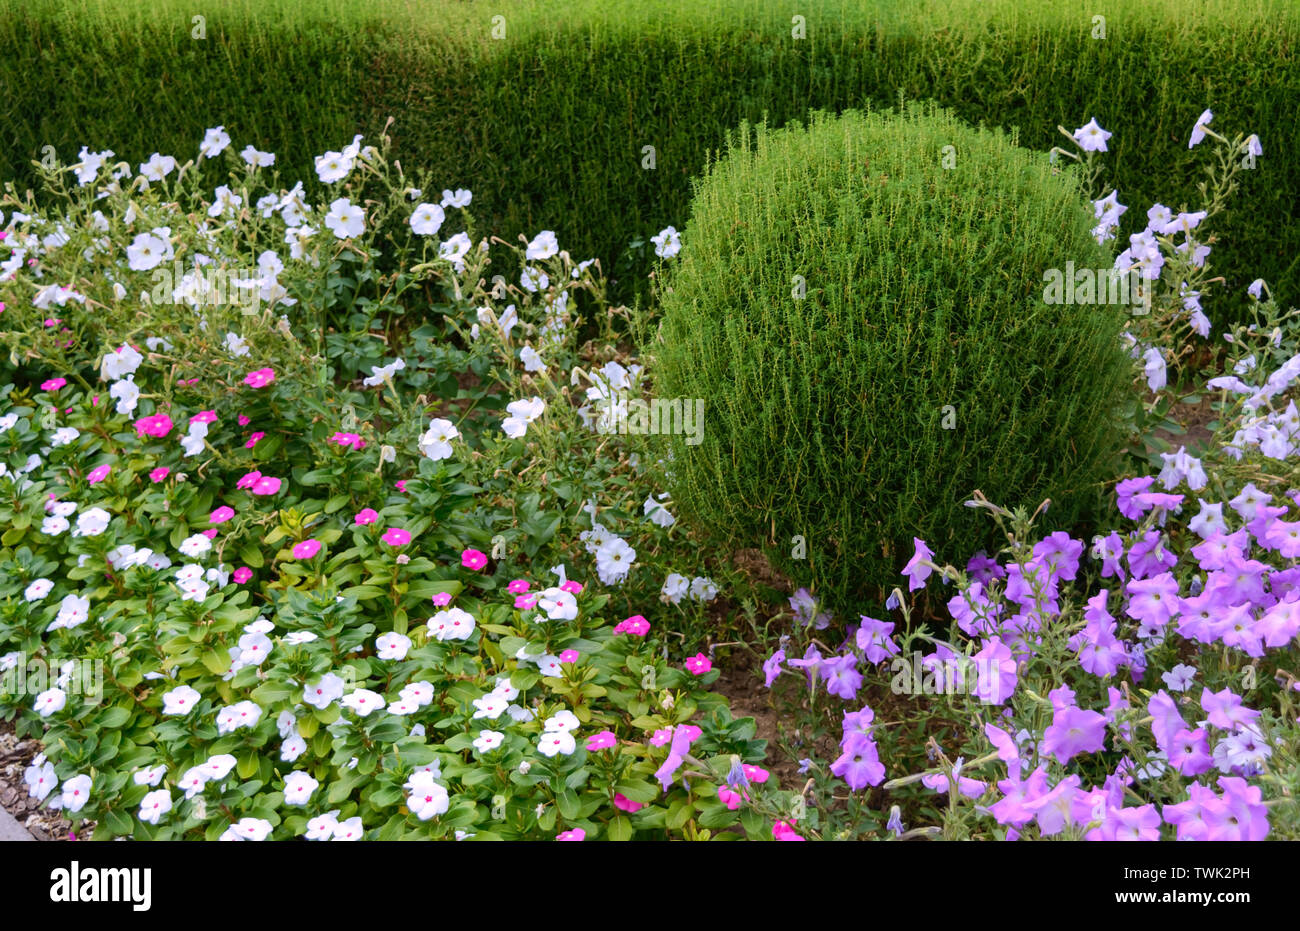 Schönes Design der Hof. Blühende Blumenbeete und Hecken. Blumen und Ziergehölze im Garten. Stockfoto